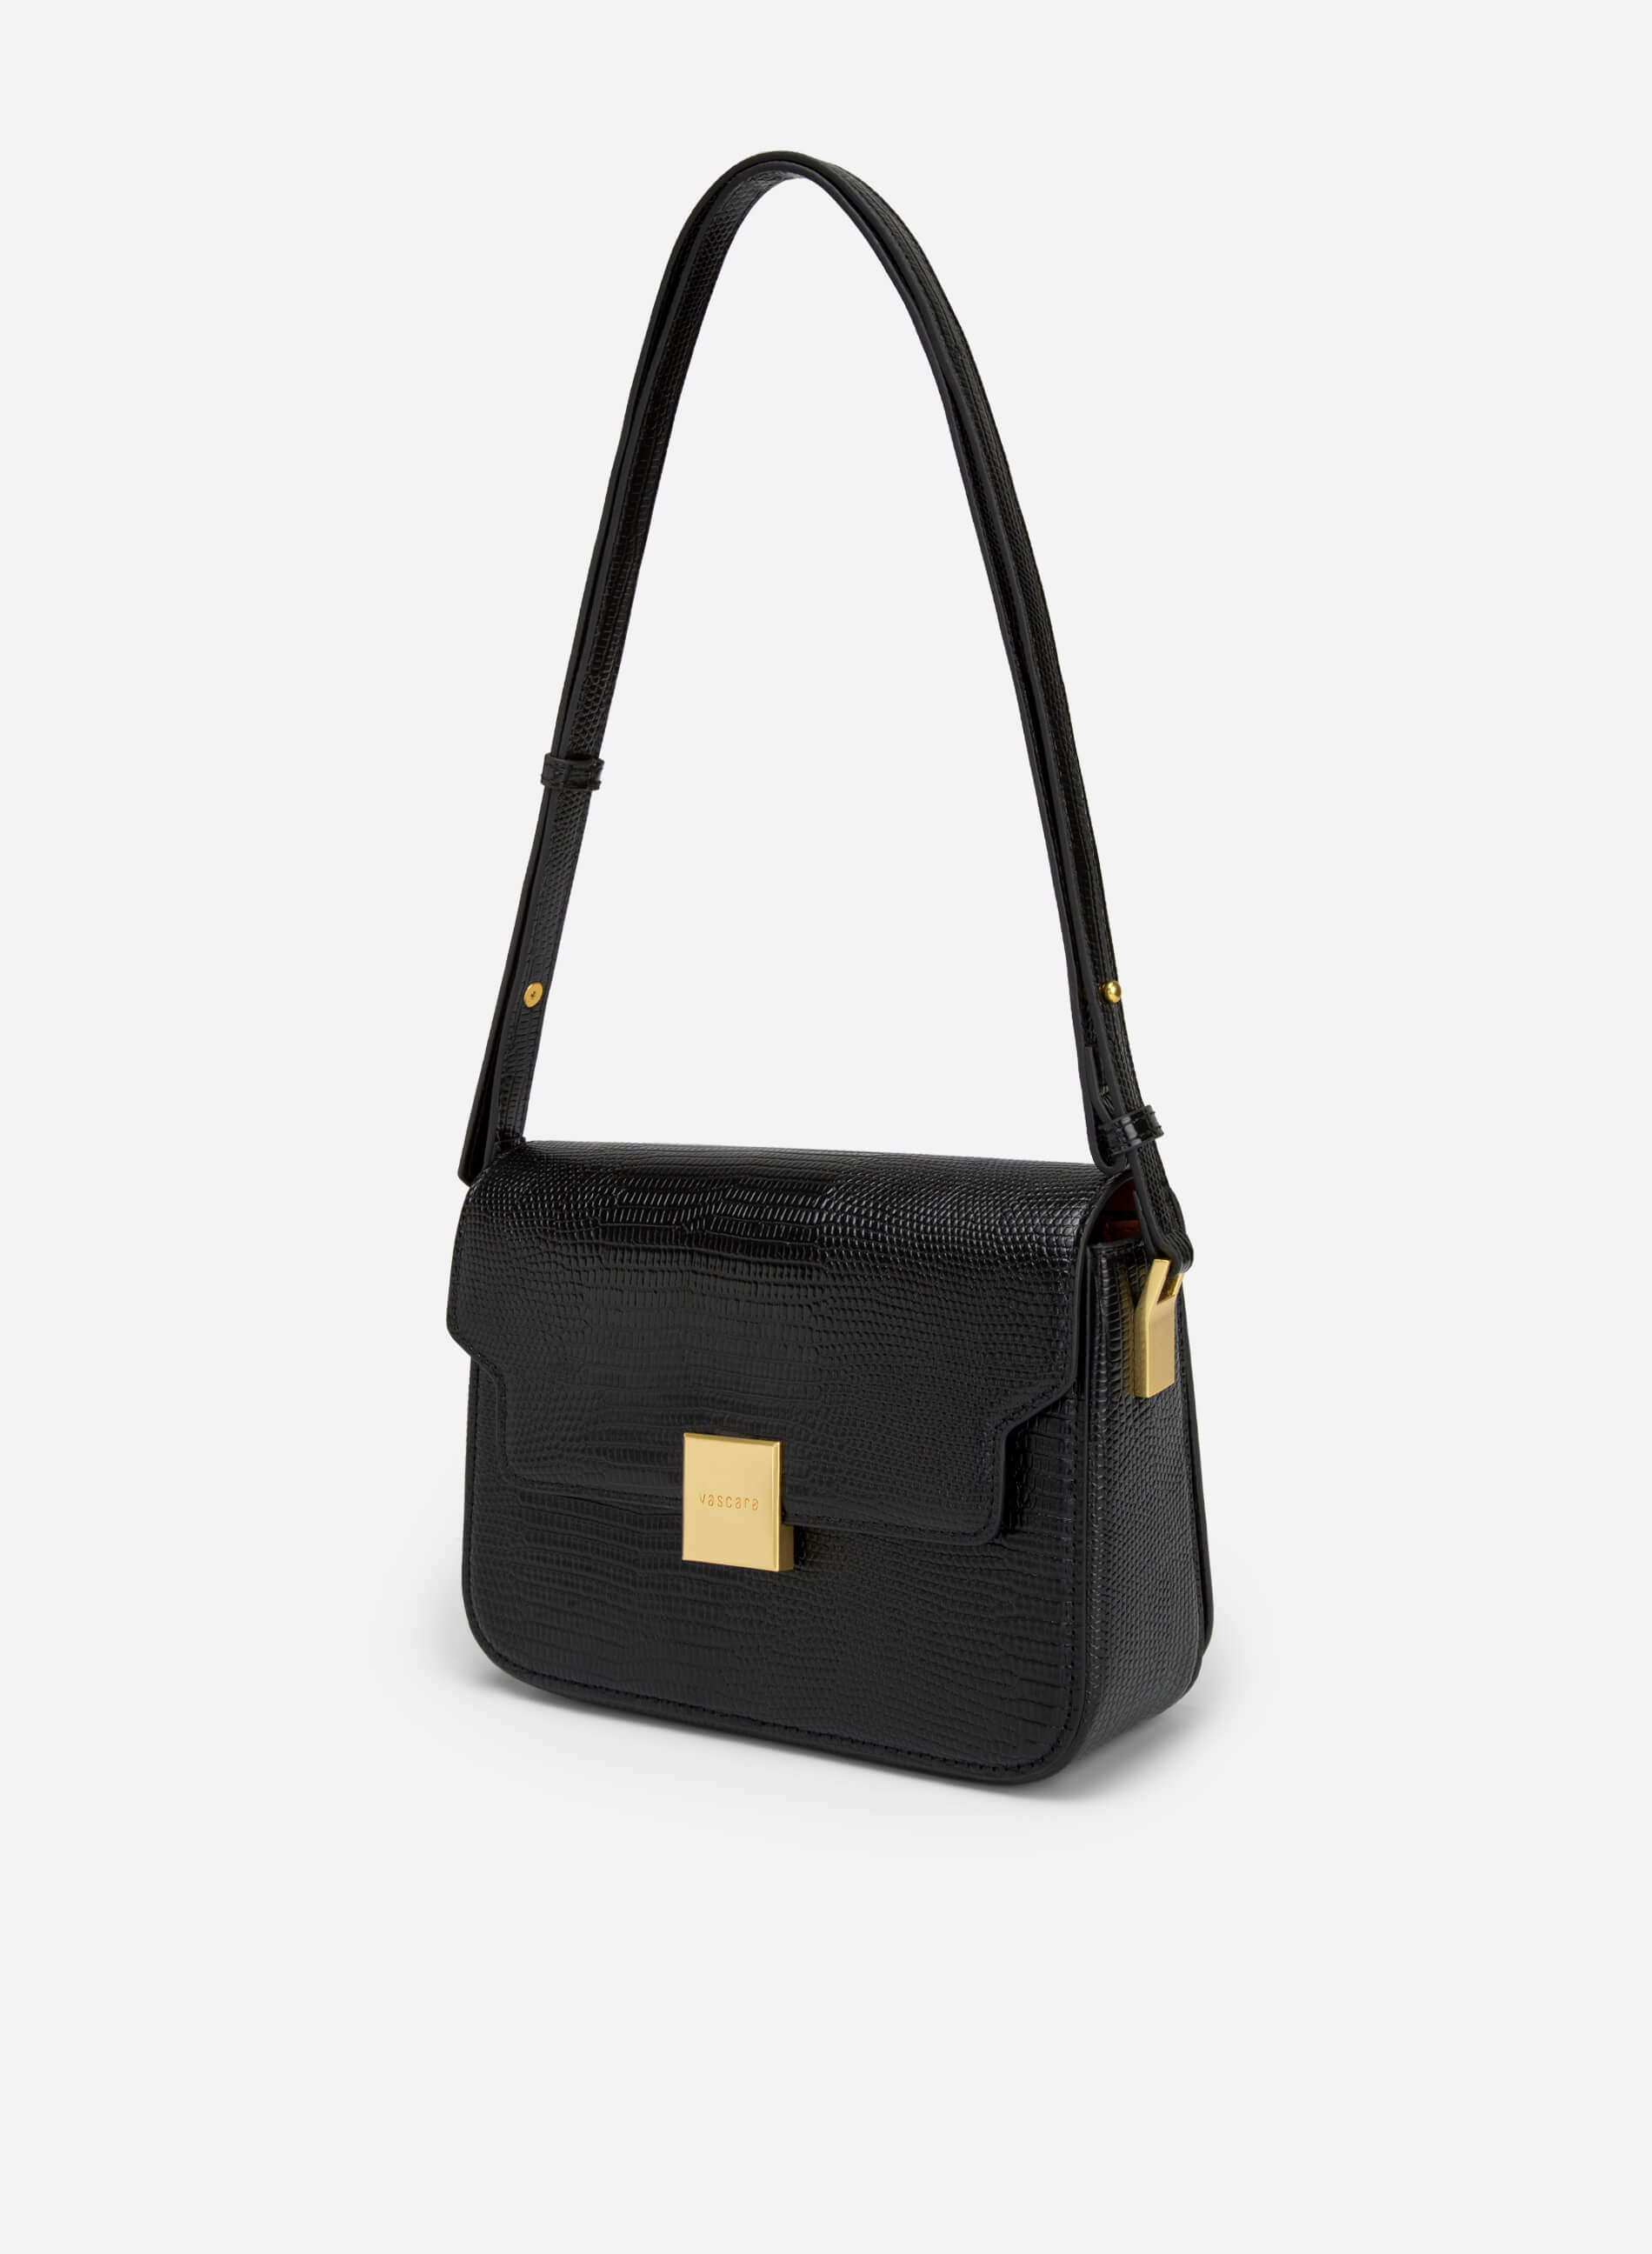 Túi đeo chéo vân da kỳ đà nắp gập khóa vuông - SHO 0206 - Màu đen